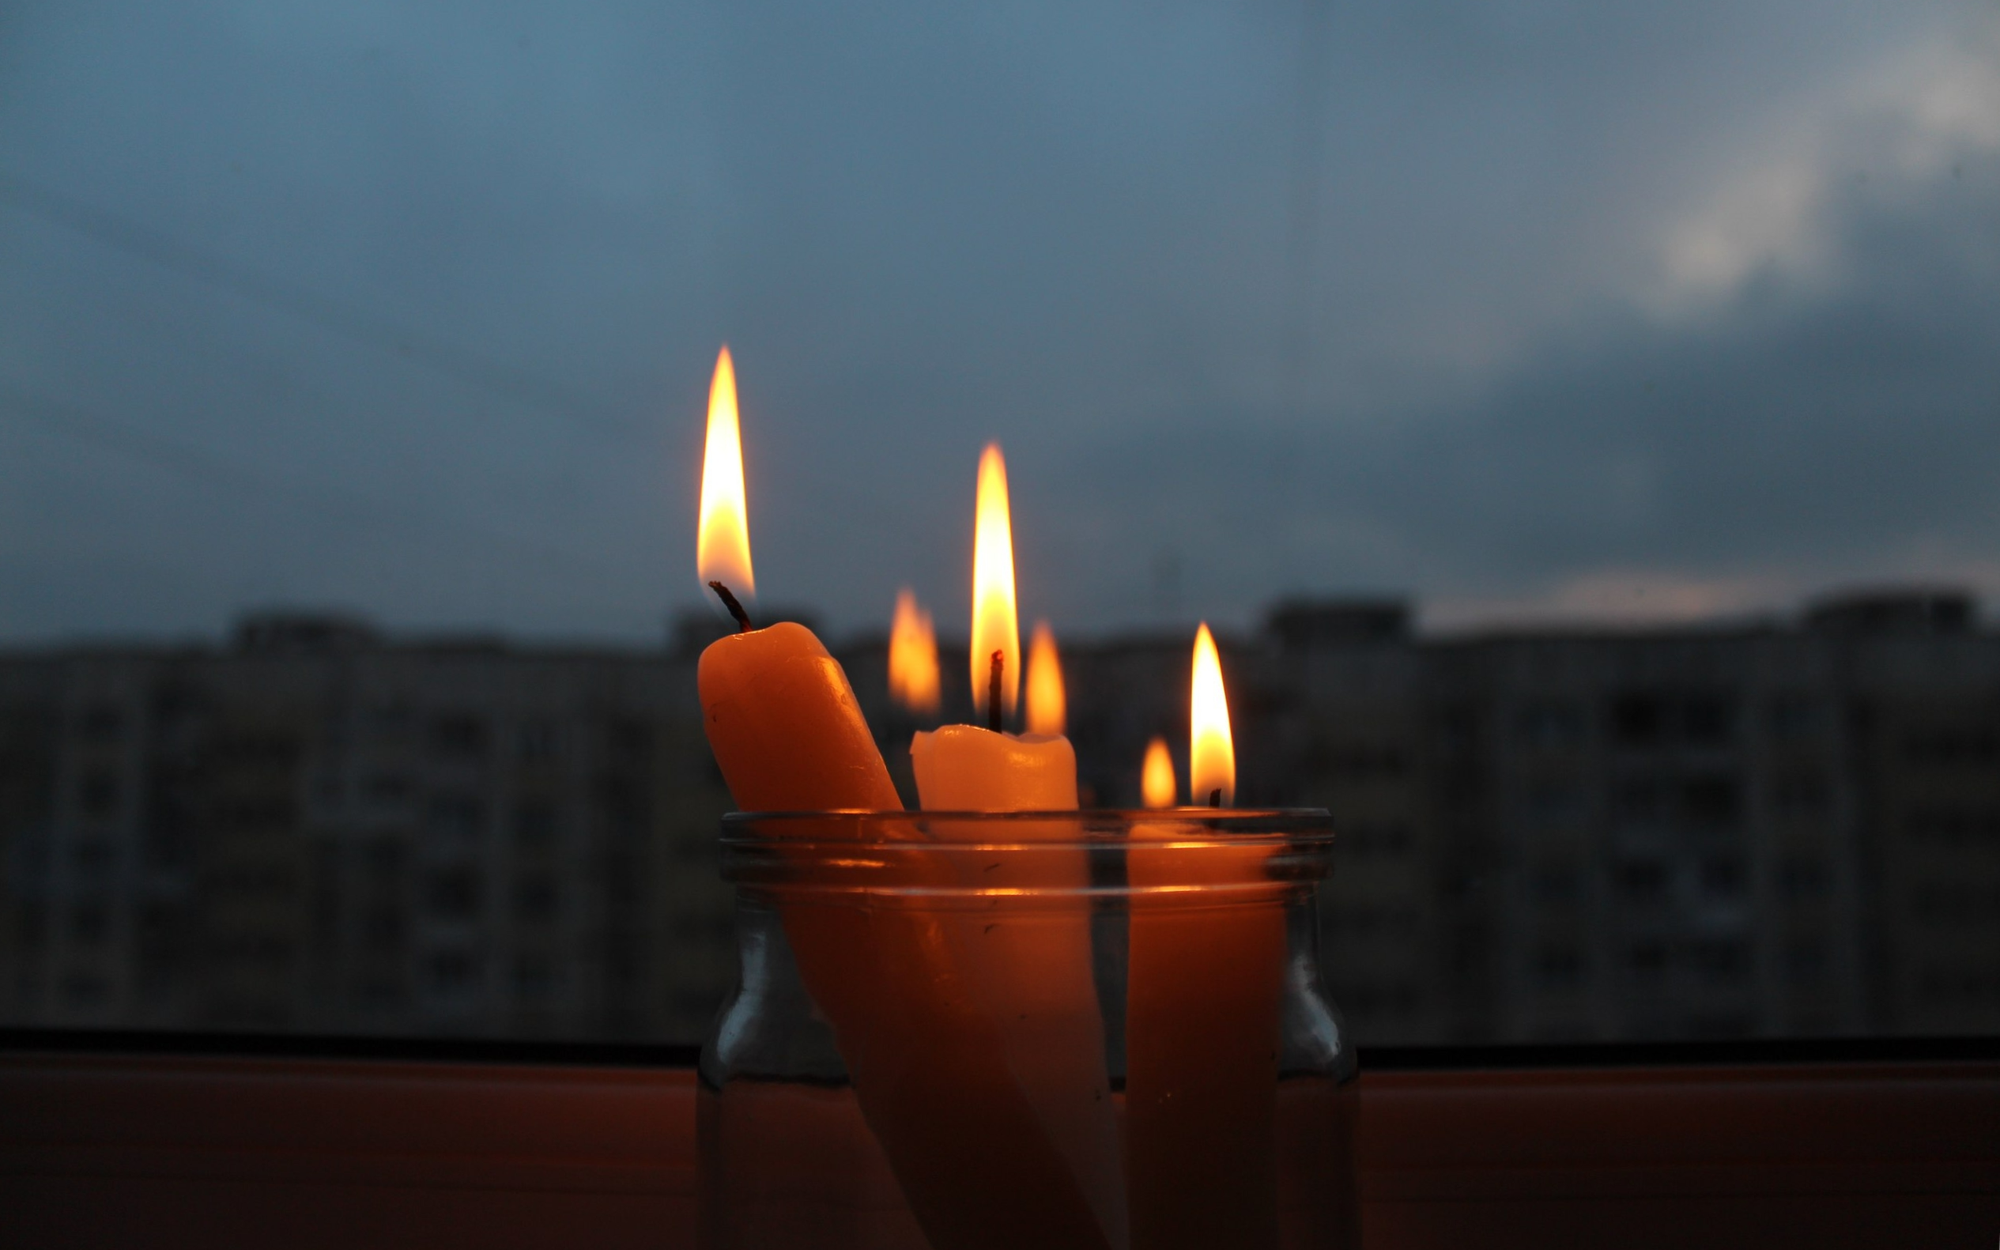 Отключения в Бишкеке: где и когда не будет электричества 8 апреля — список